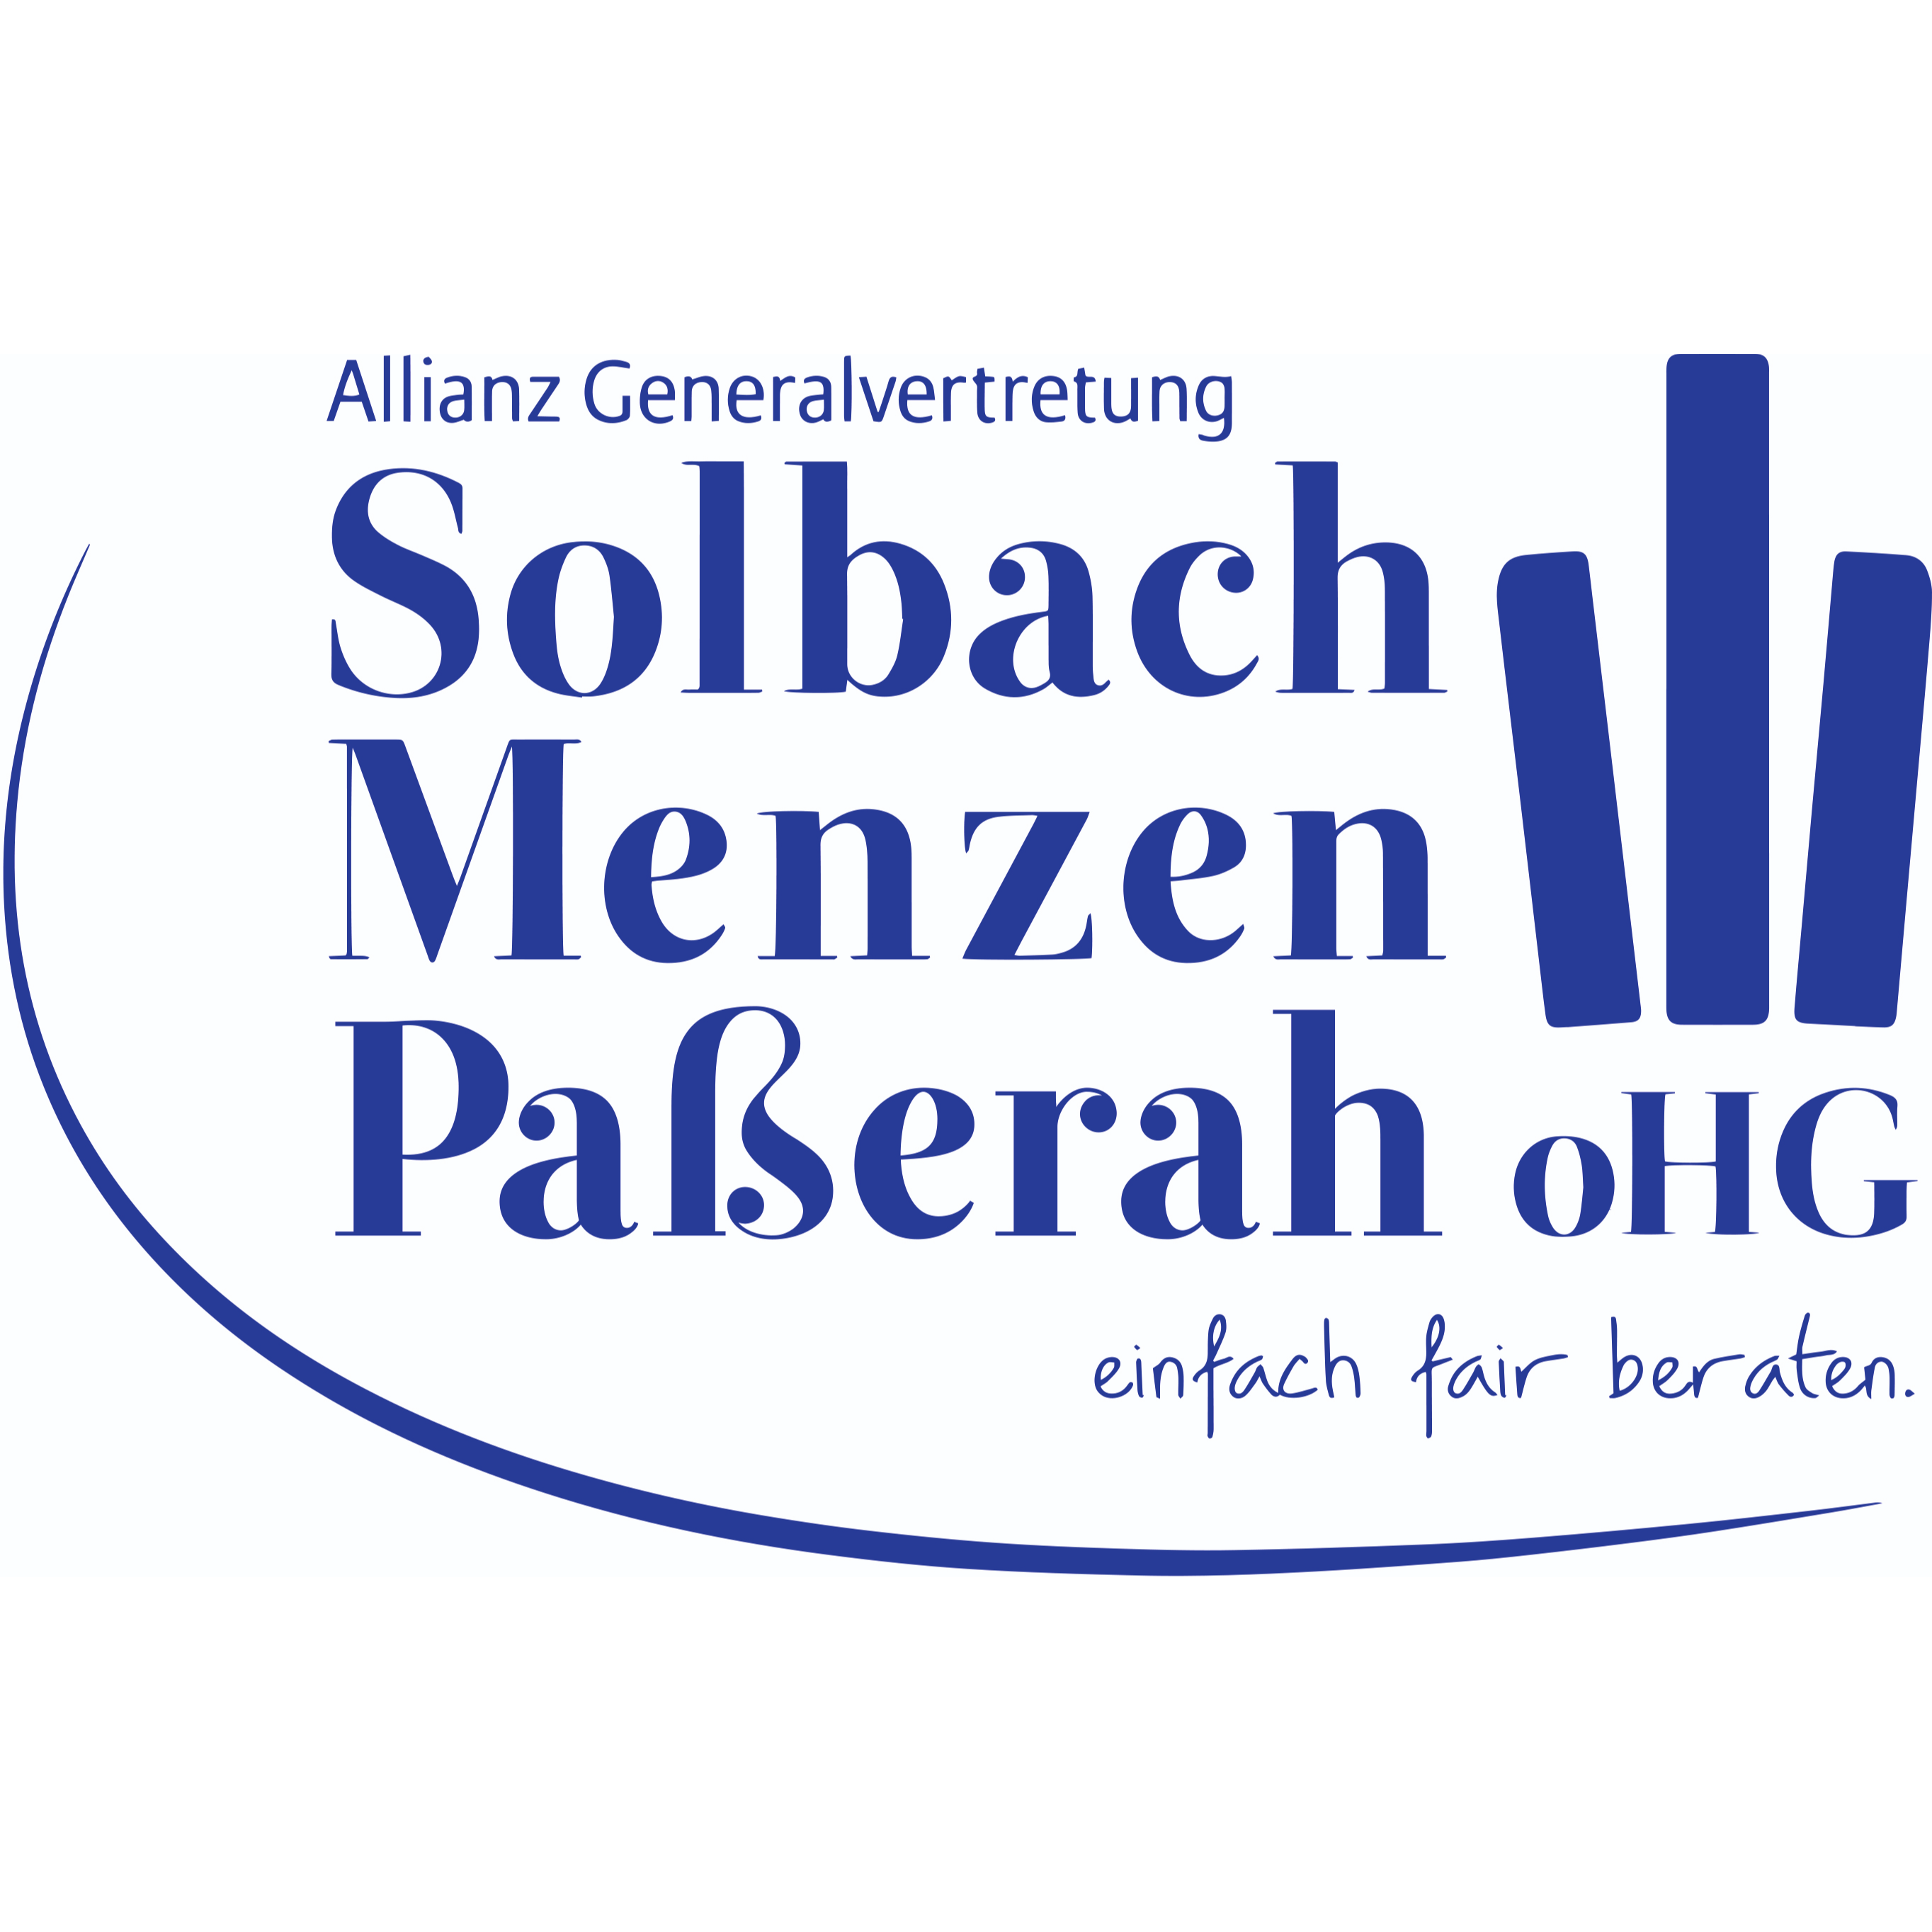 Allianz Versicherung Solbach Menzen Paßerah OHG Generalvertretung in Recklinghausen - Logo